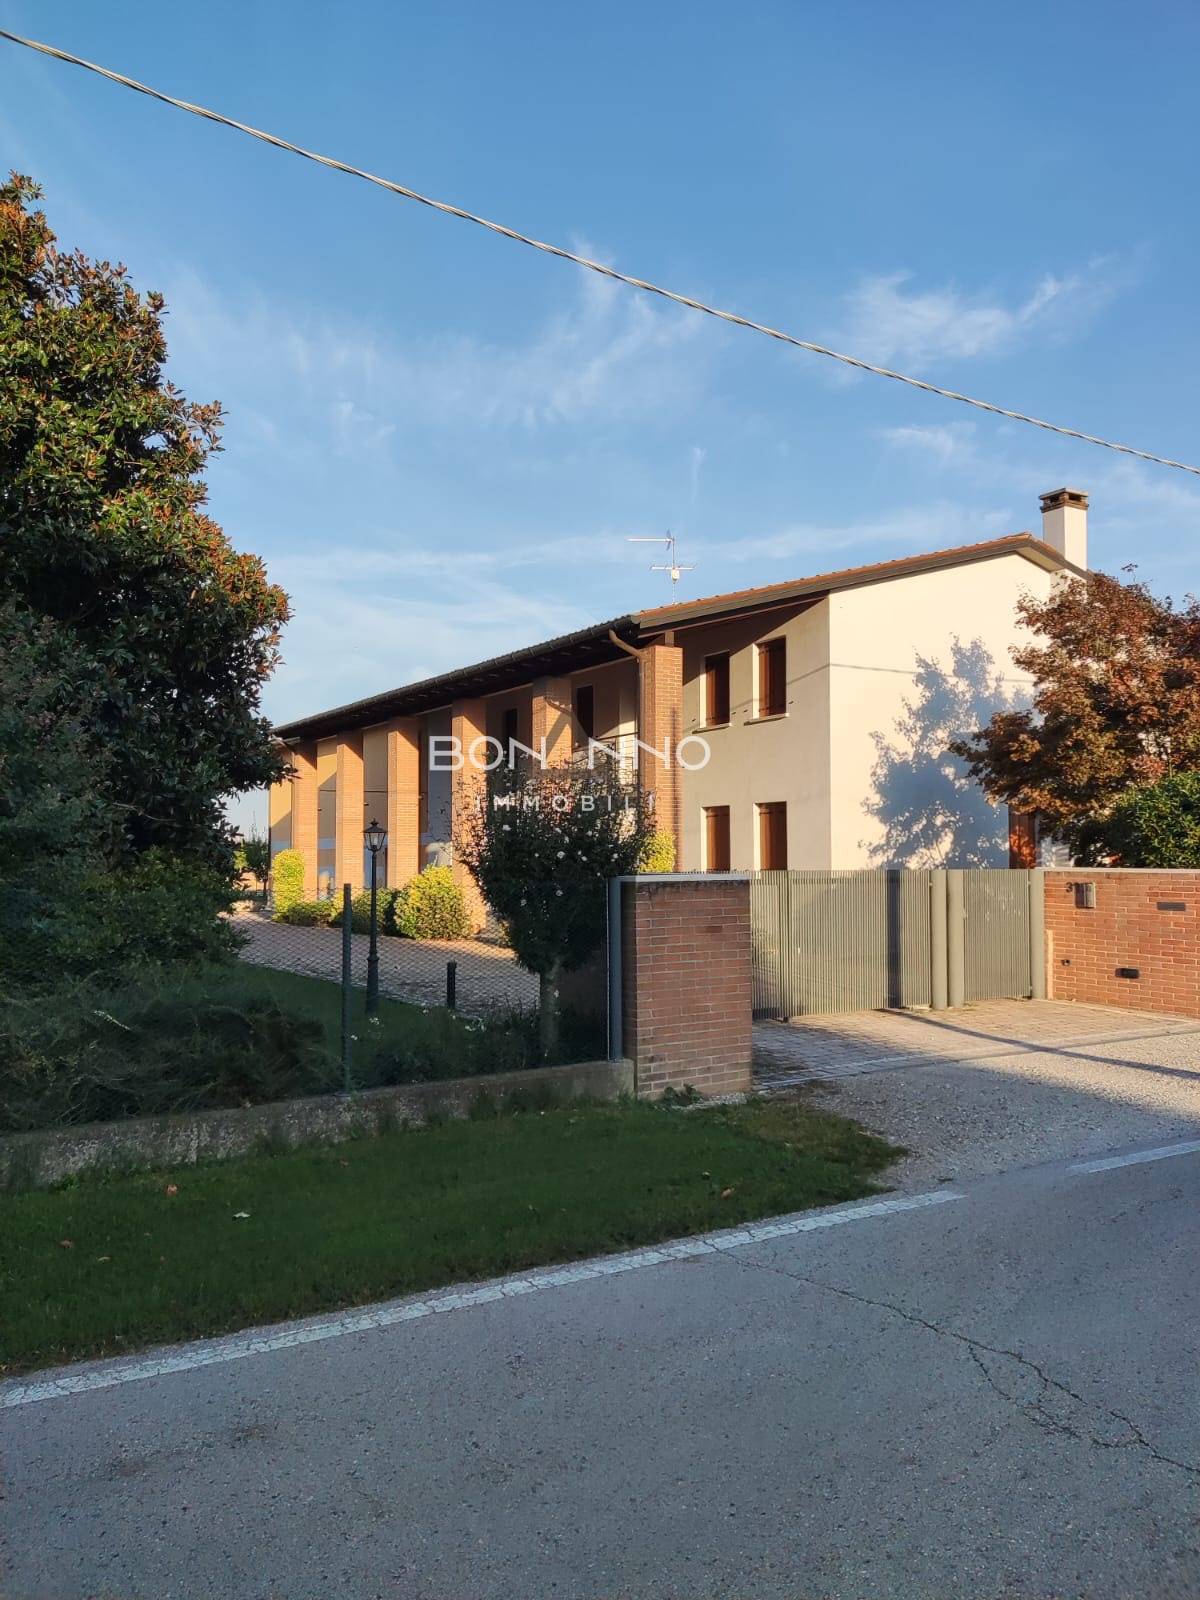 Villa in vendita a Camposampiero, 8 locali, zona ega, prezzo € 550.000 | PortaleAgenzieImmobiliari.it